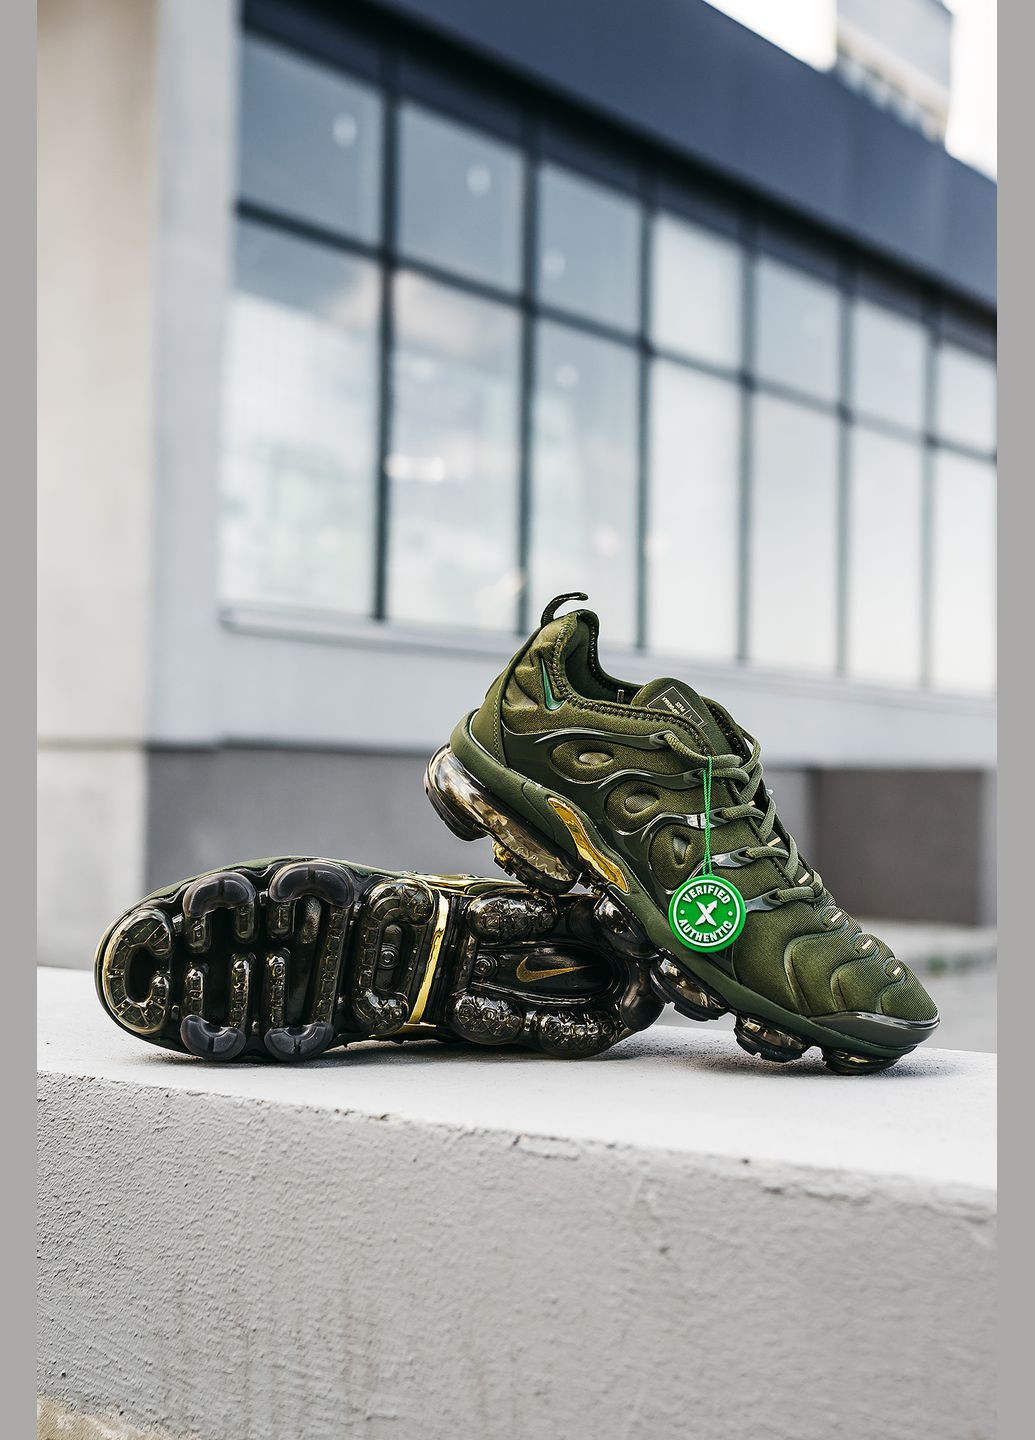 Оливковые (хаки) демисезонные кроссовки мужские Nike VaporMax Plus Tn Olive Green